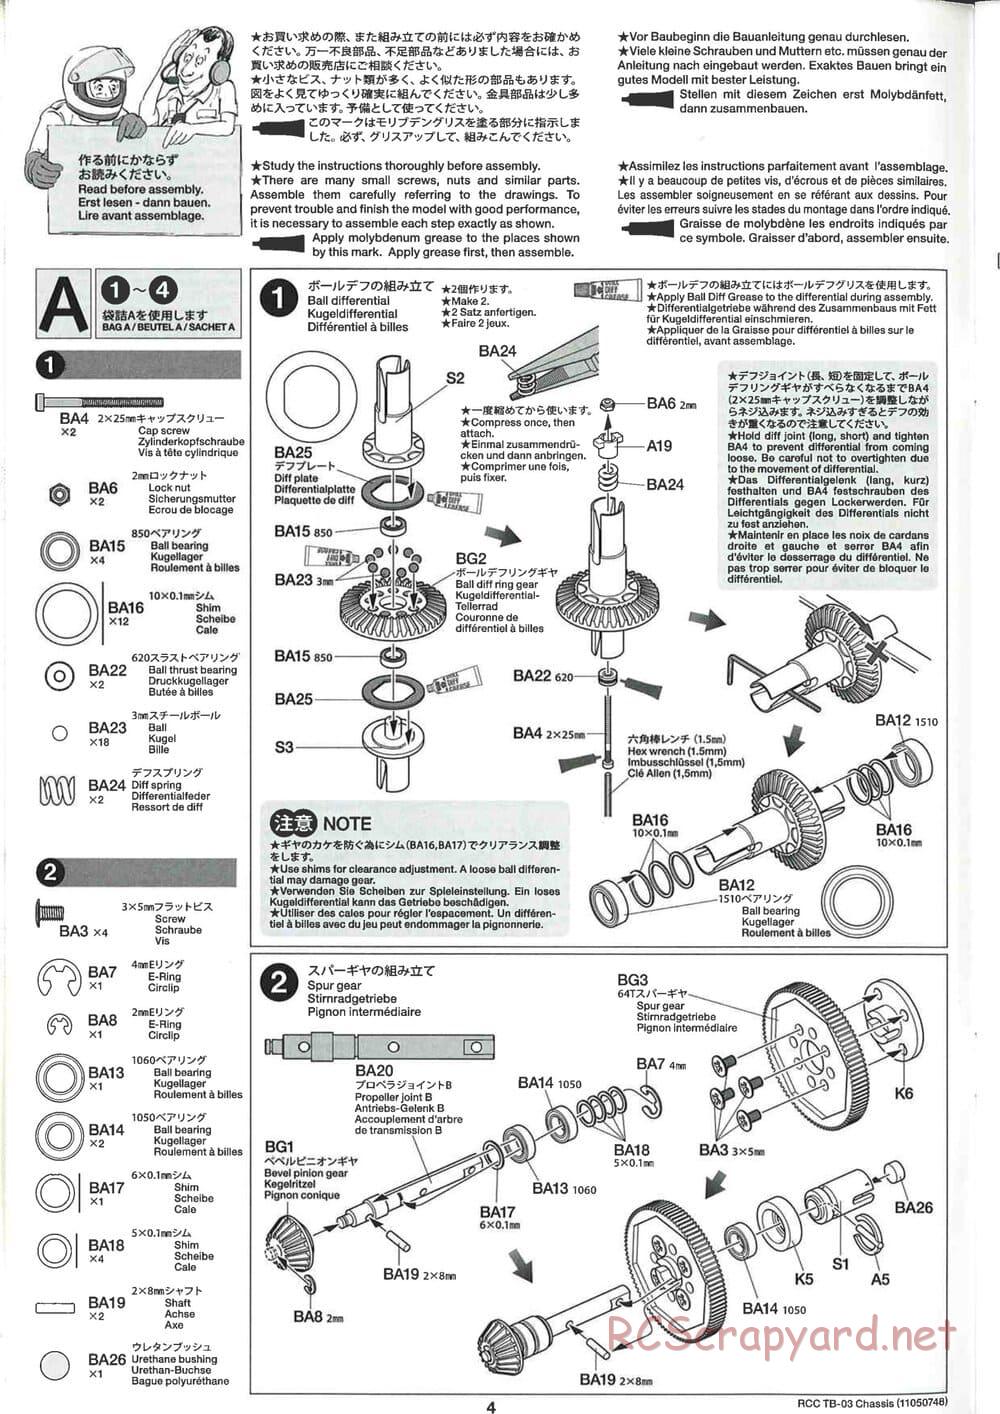 Tamiya - TB-03 Chassis - Manual - Page 4